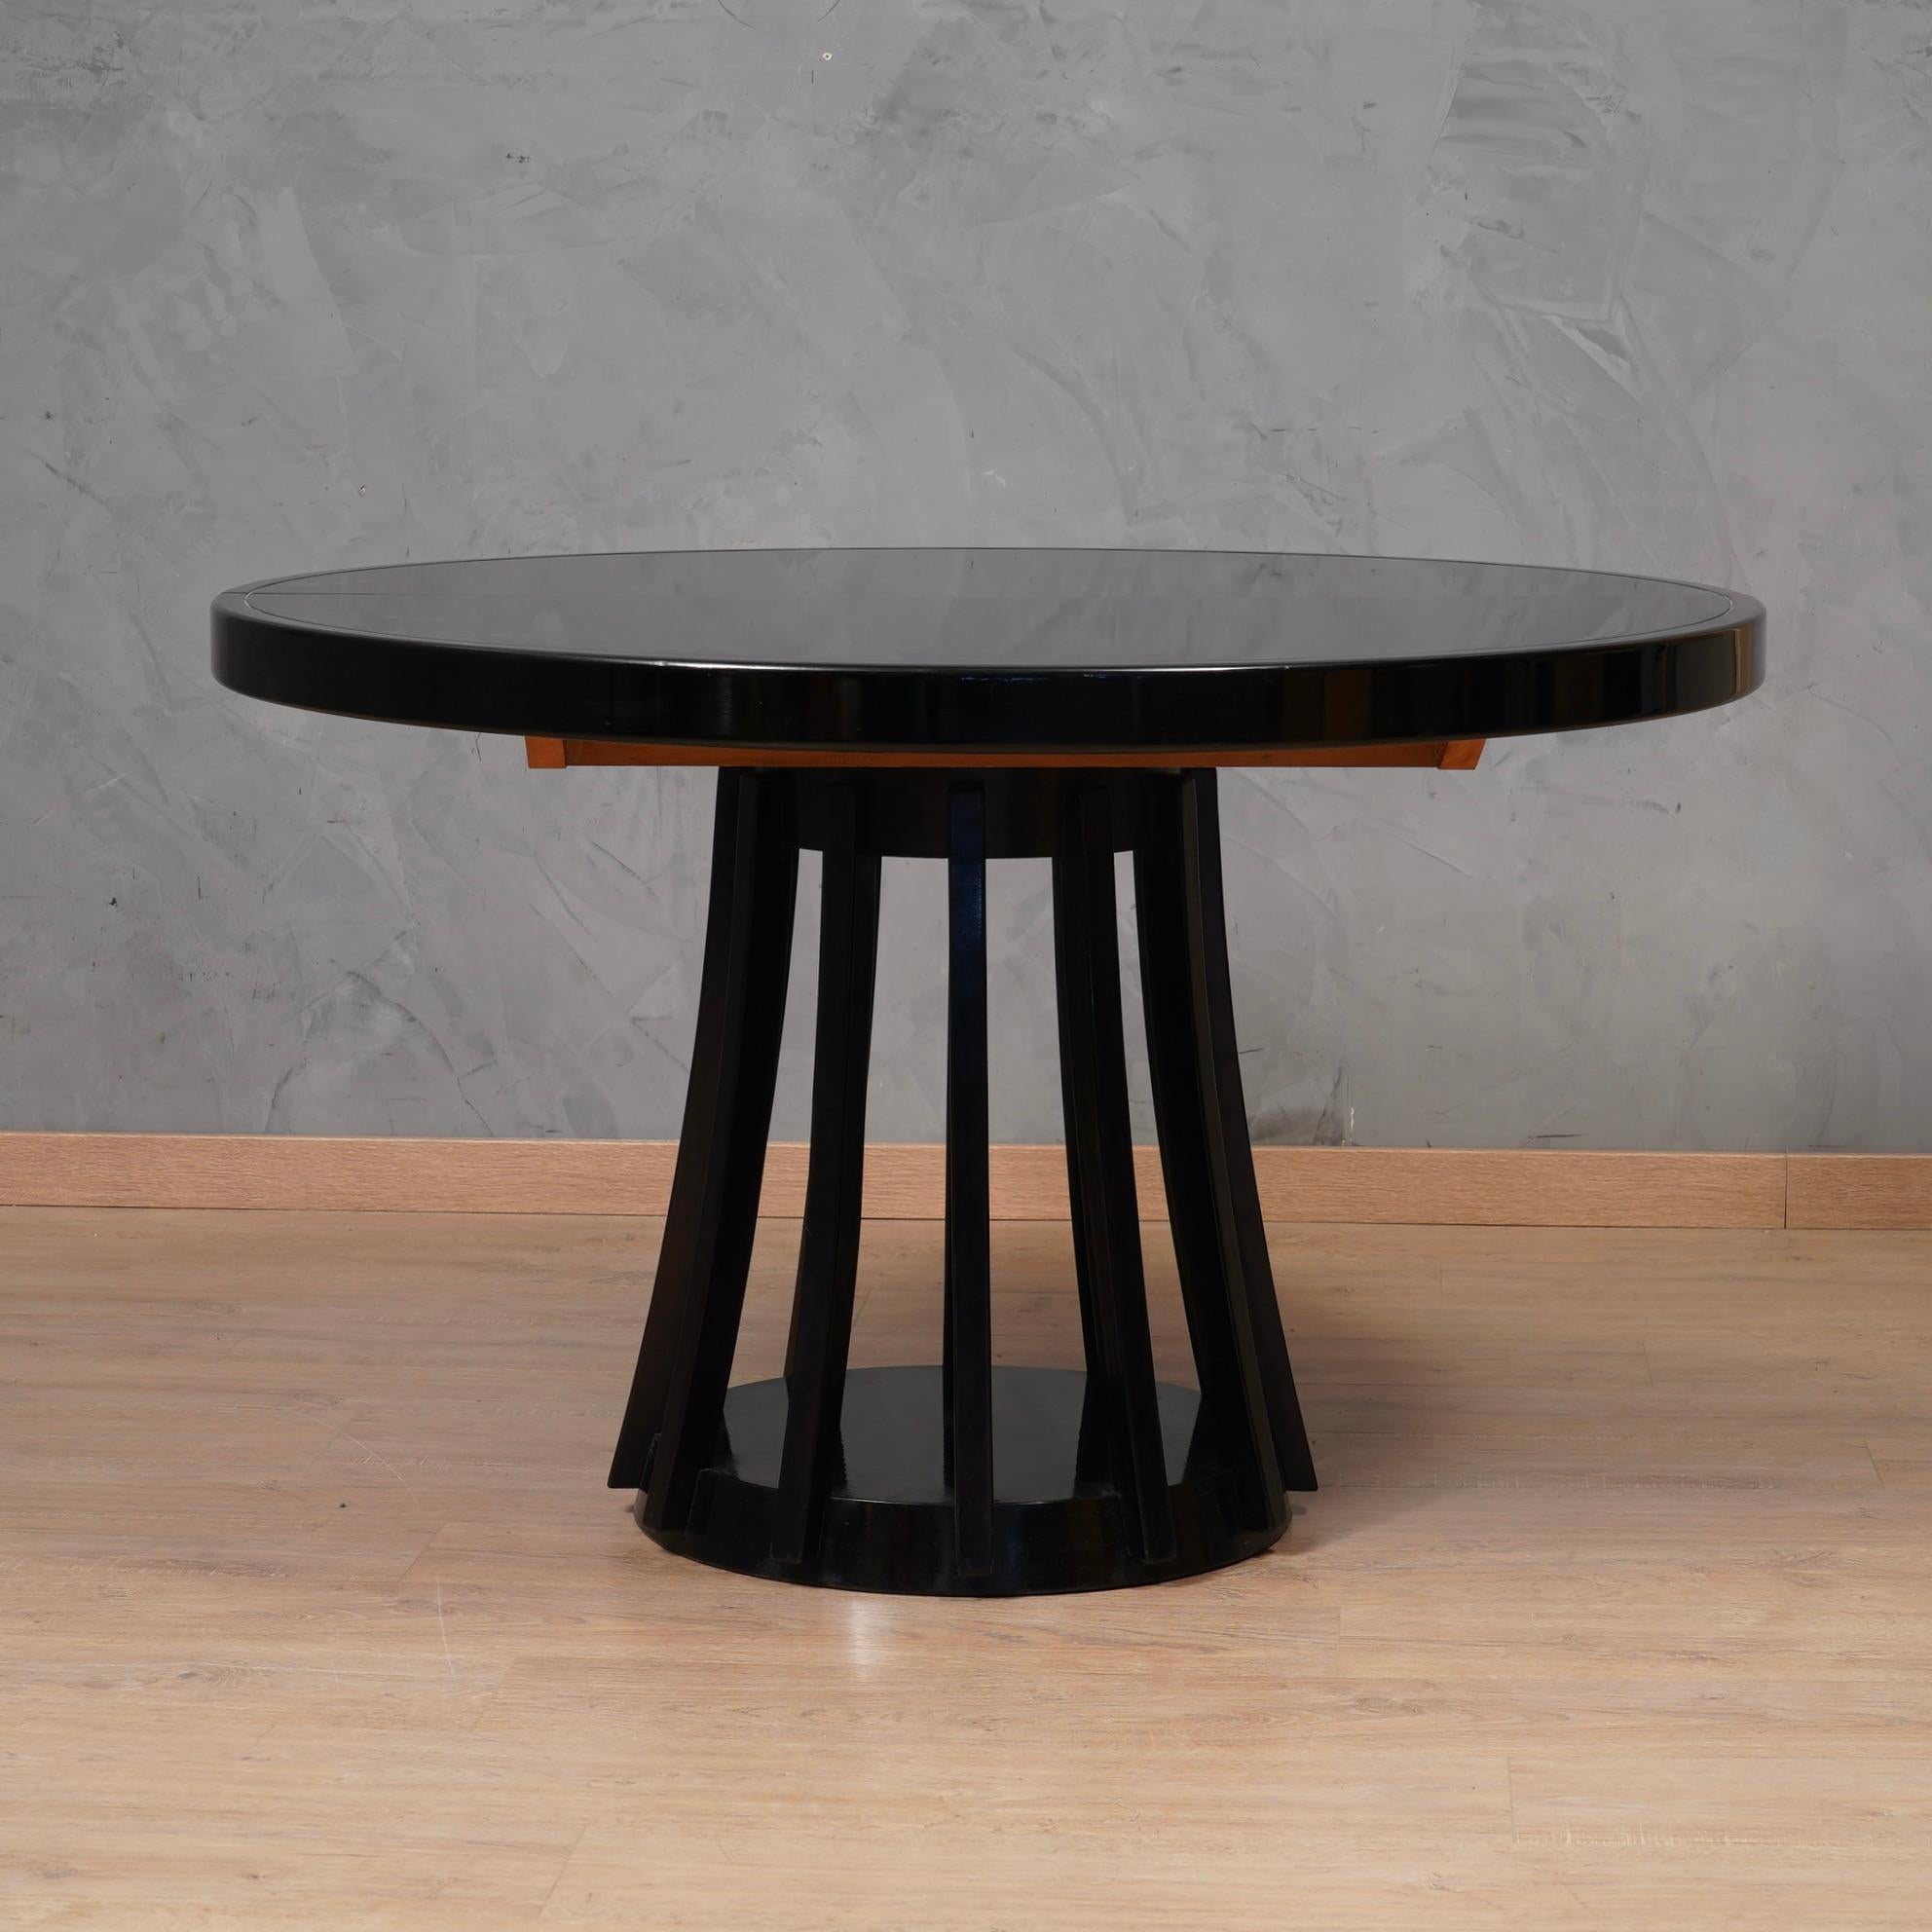 La table ronde Angelo Mangiarotti S11, produite vers 1970, est une pièce de design exquise qui illustre une forme intemporelle et une capacité exceptionnelle à adapter le produit à son utilisation. Avec son caractère unique et son attention